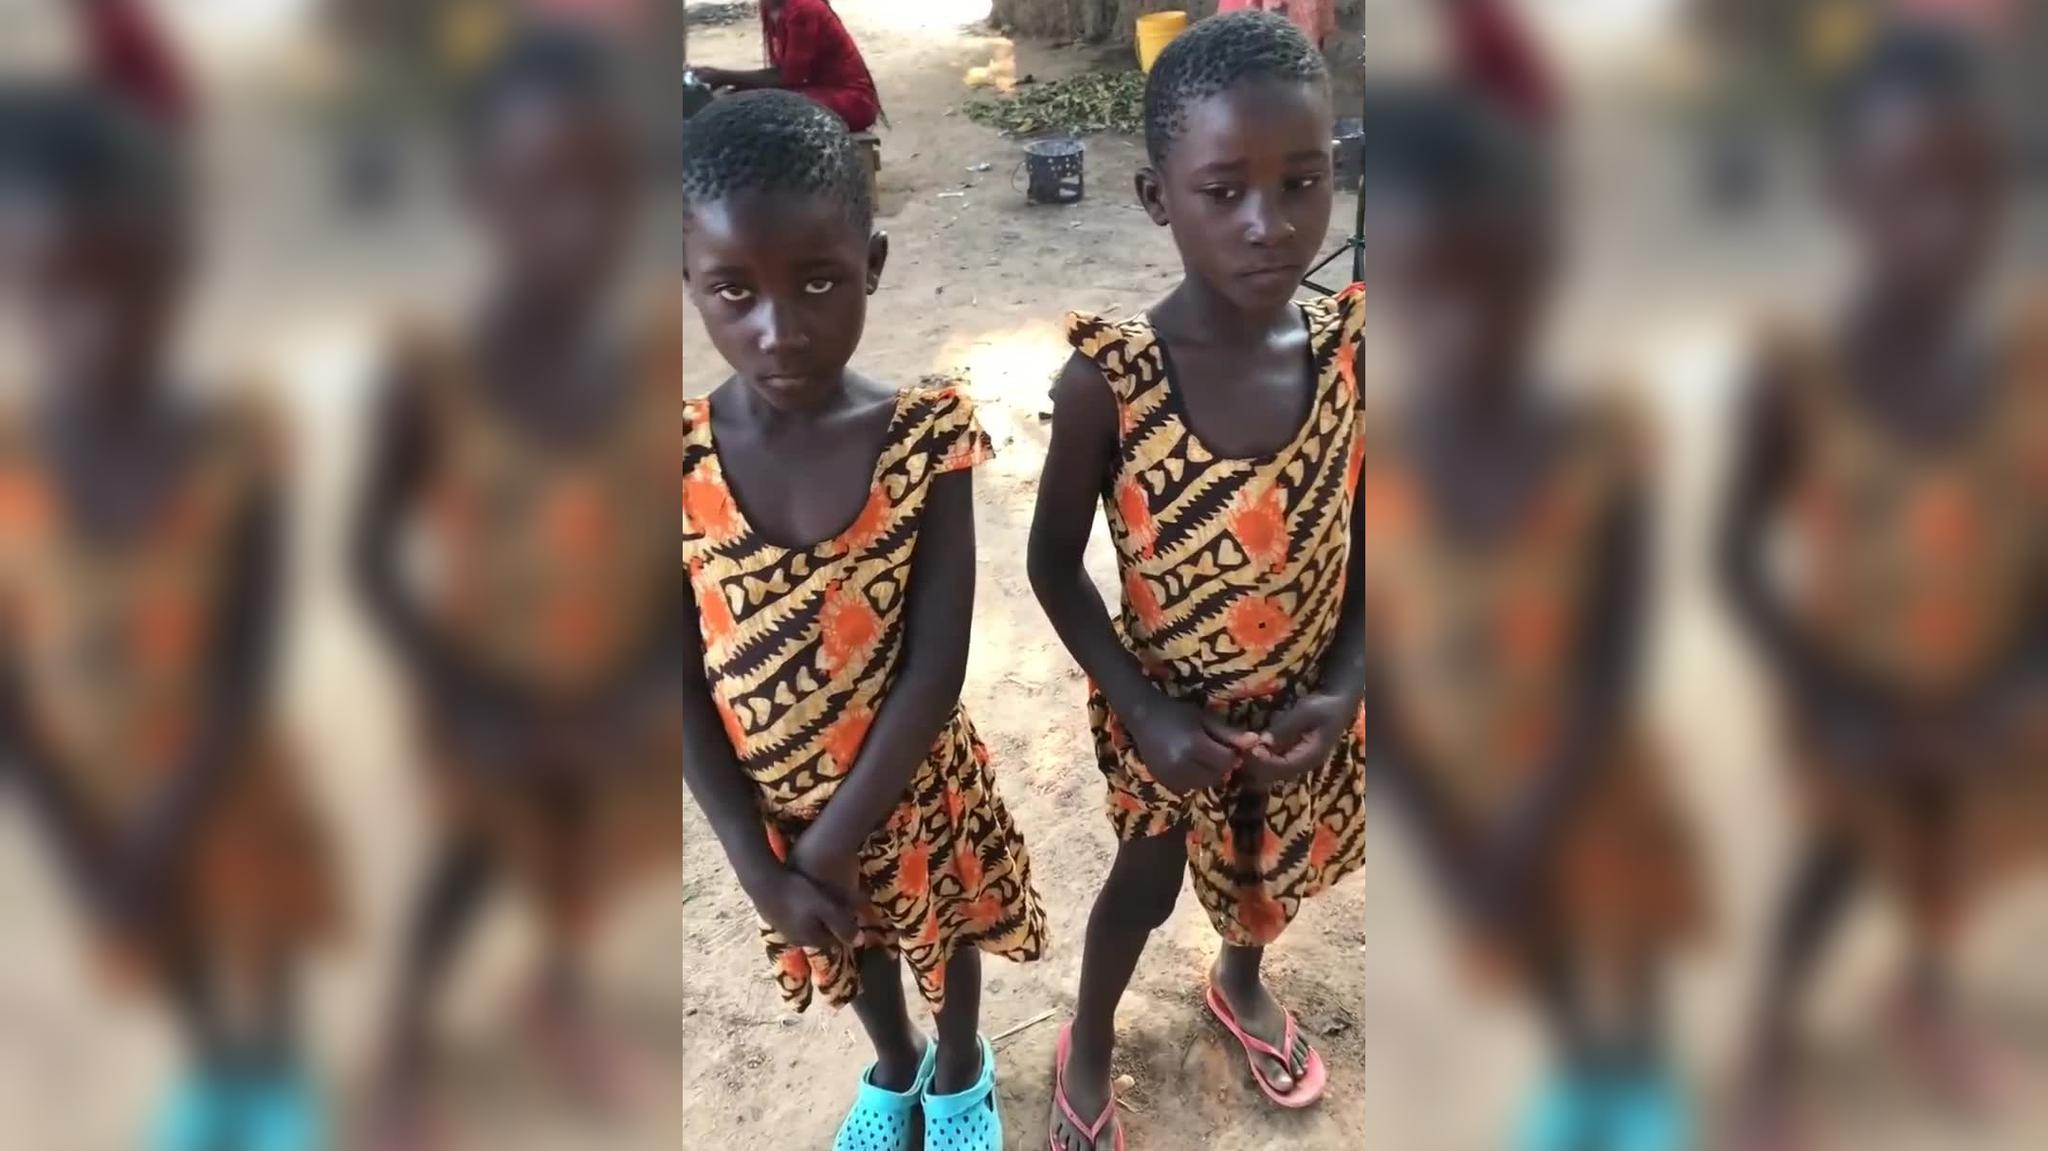 非洲人双胞胎是分不清男孩还是女孩